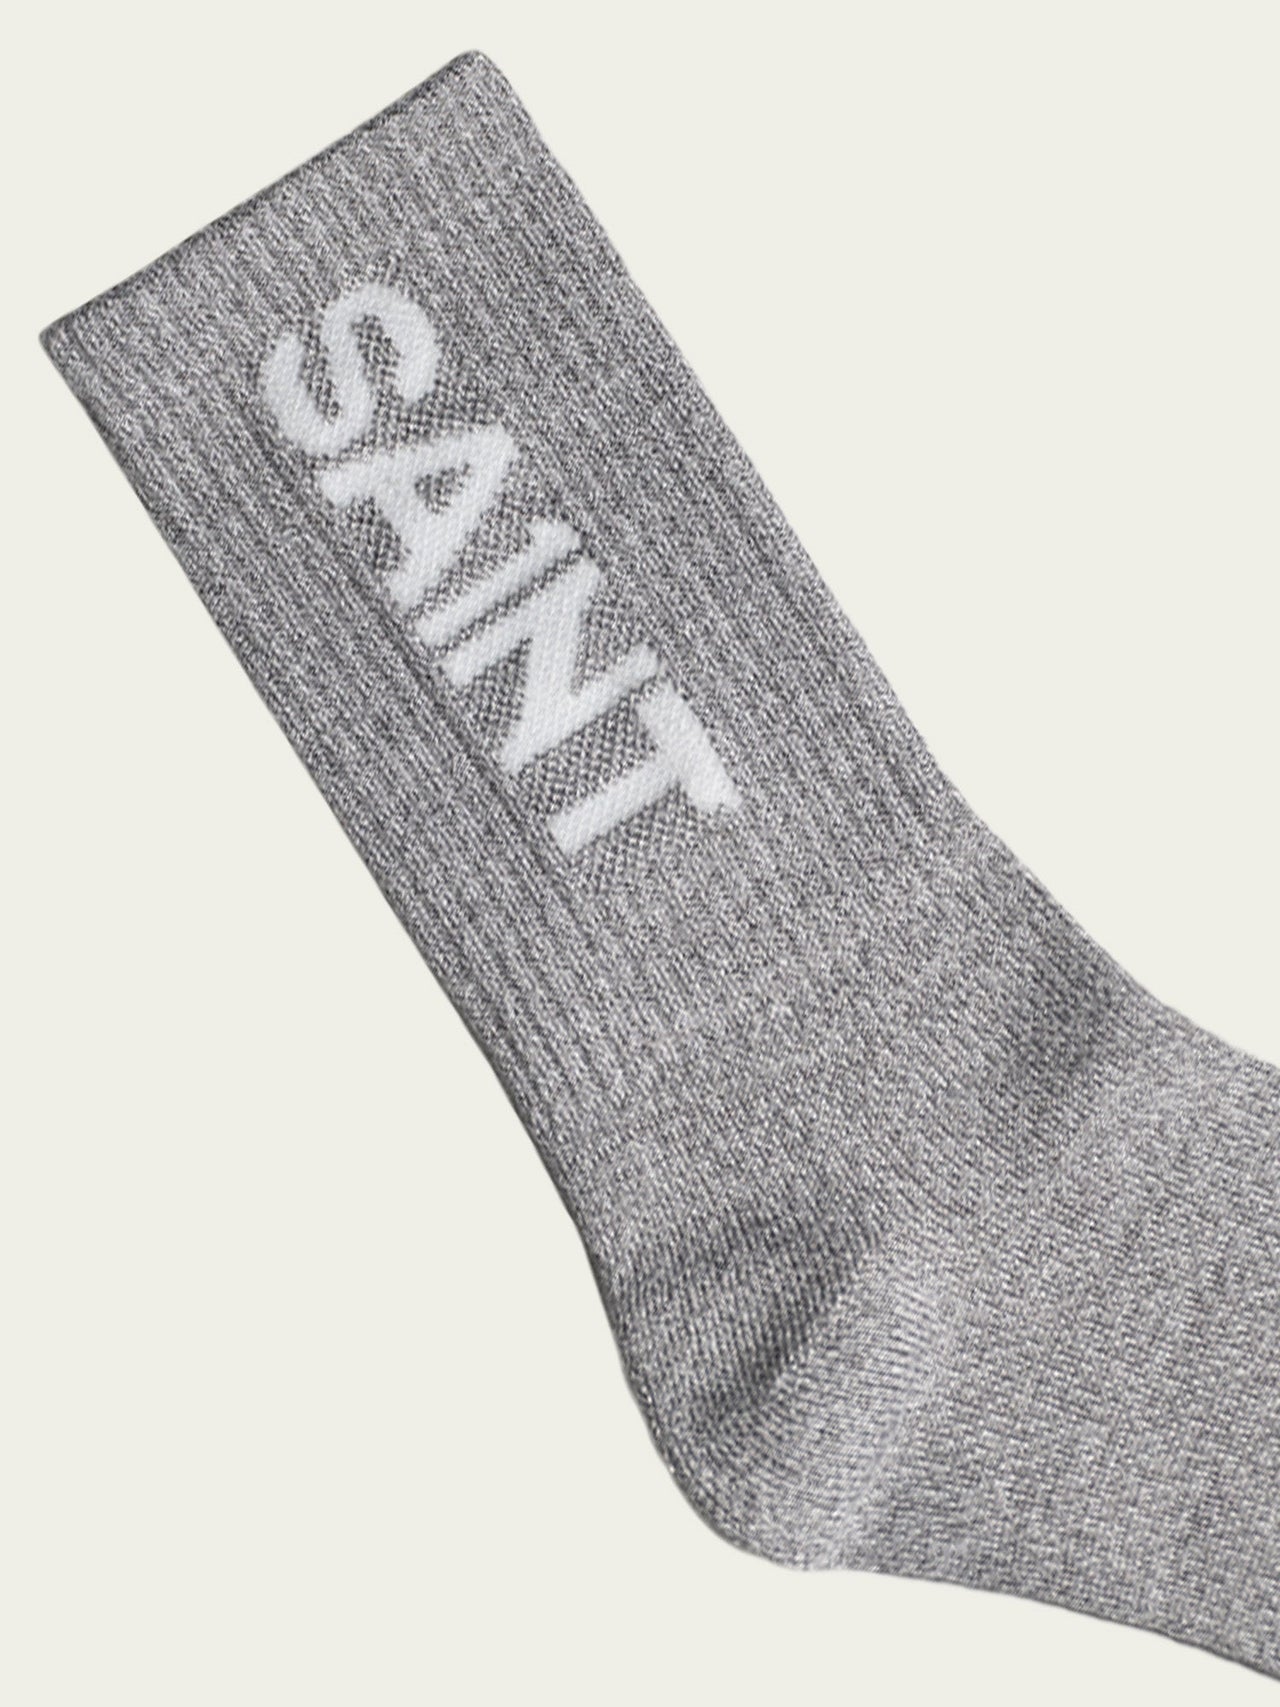 SA1NT Bamboo Crew Socks - 1 pack - Grey Marle - Saint USA